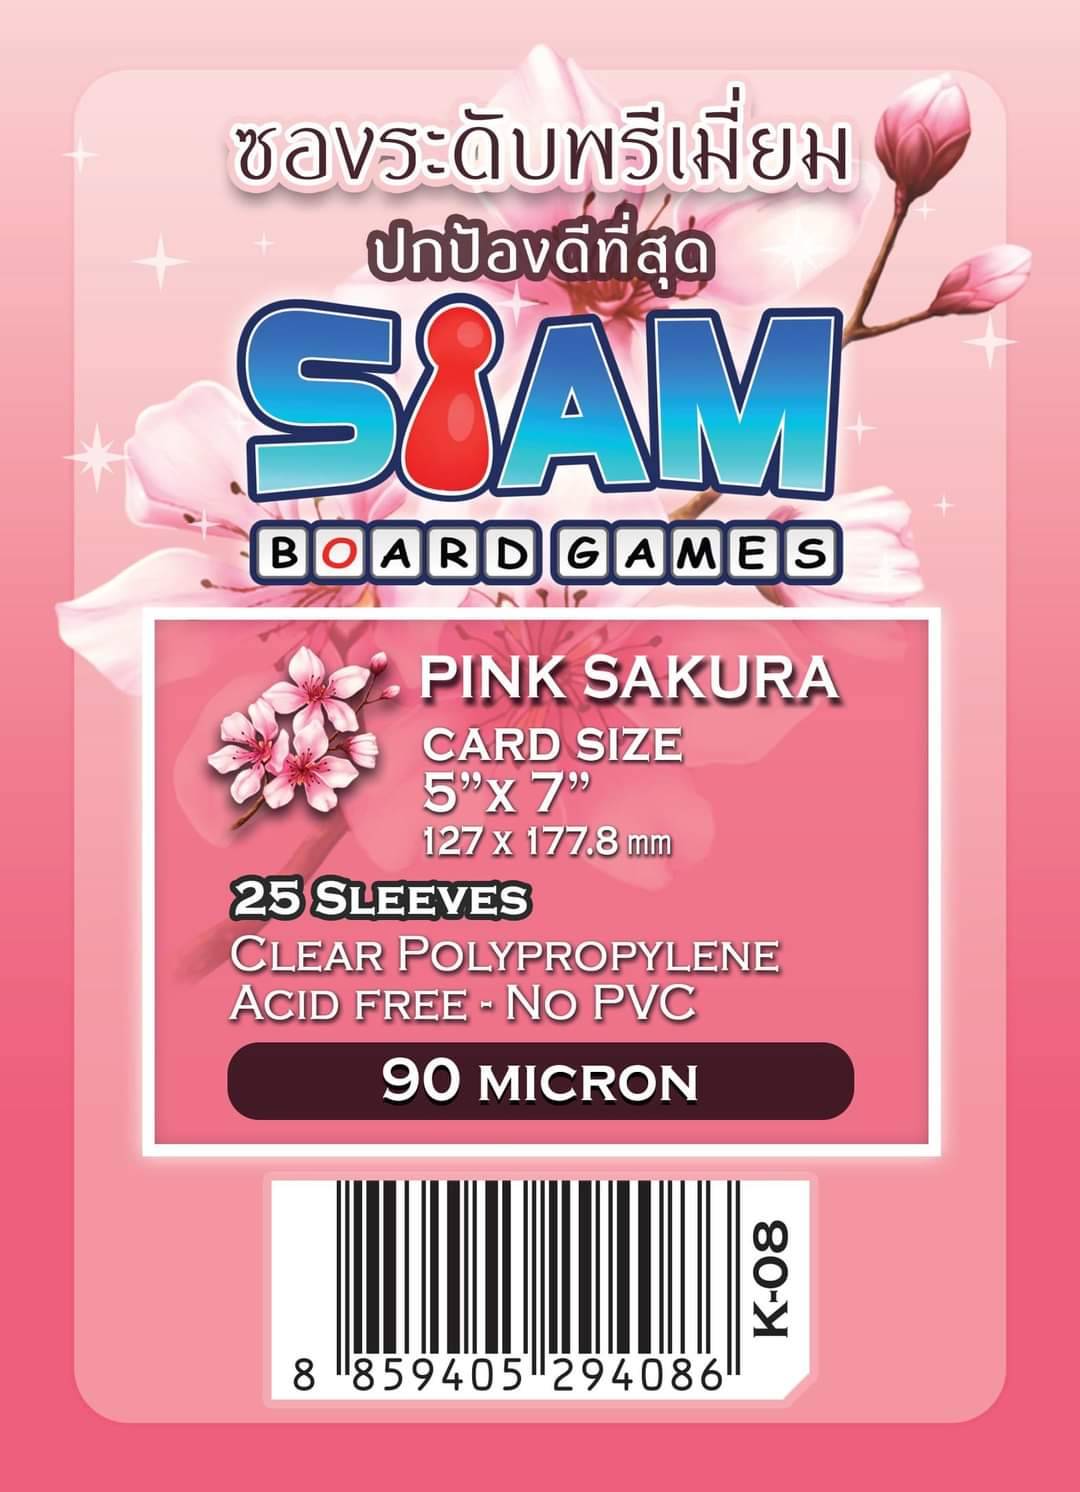 ซองใส่การ์ดระดับพรีเมี่ยมรุ่นดอกไม้ Pink Sakura ขนาด 127 x 177.8 มม. (5'' X 7'') ความหนา 90 ไมครอน (Premium Card Sleeves: Pink Sakura - 127 x 177.8 mm (5'' X 7'') / 90 micron)